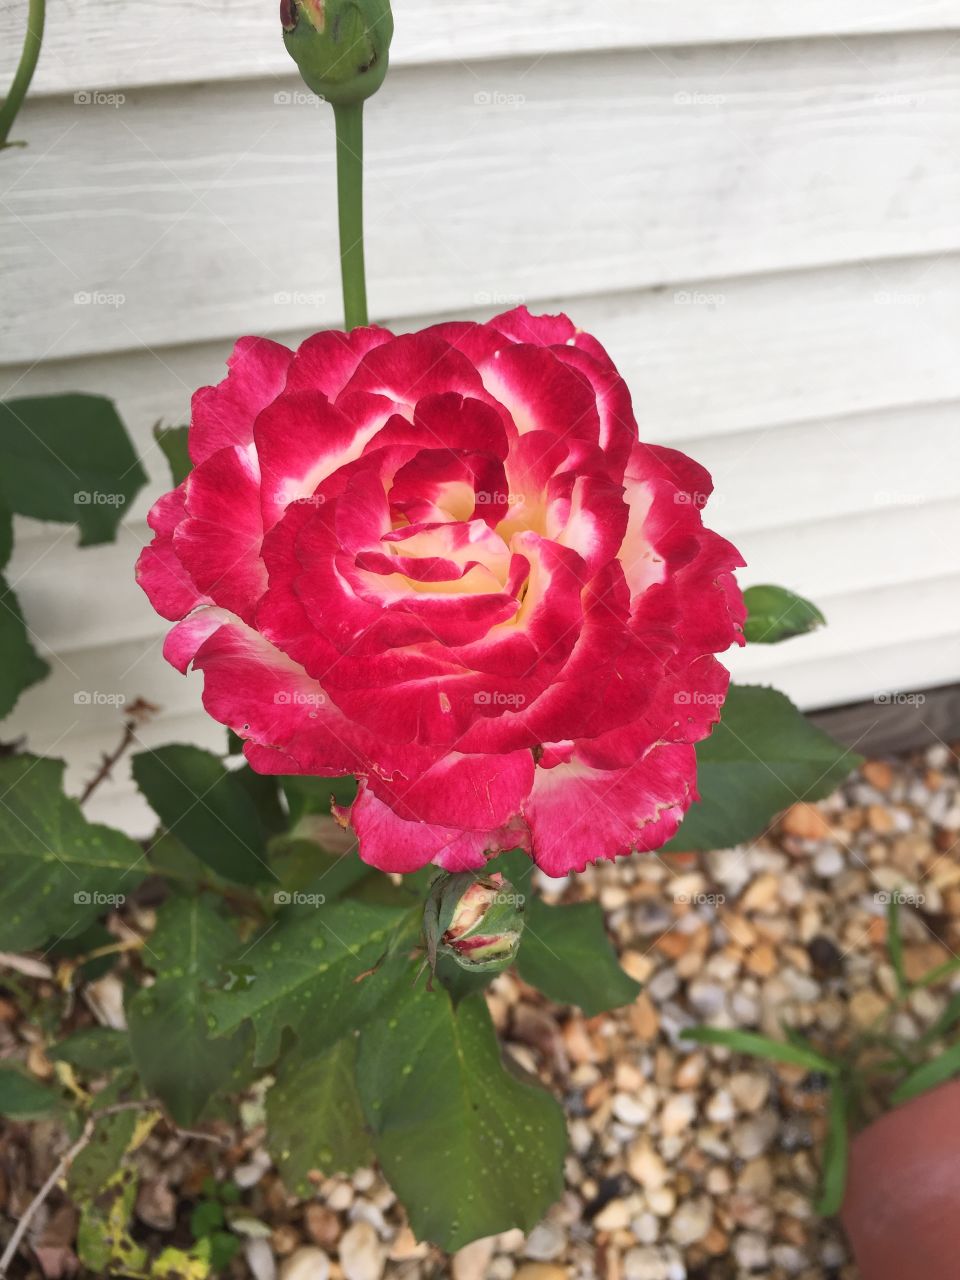 Rose
